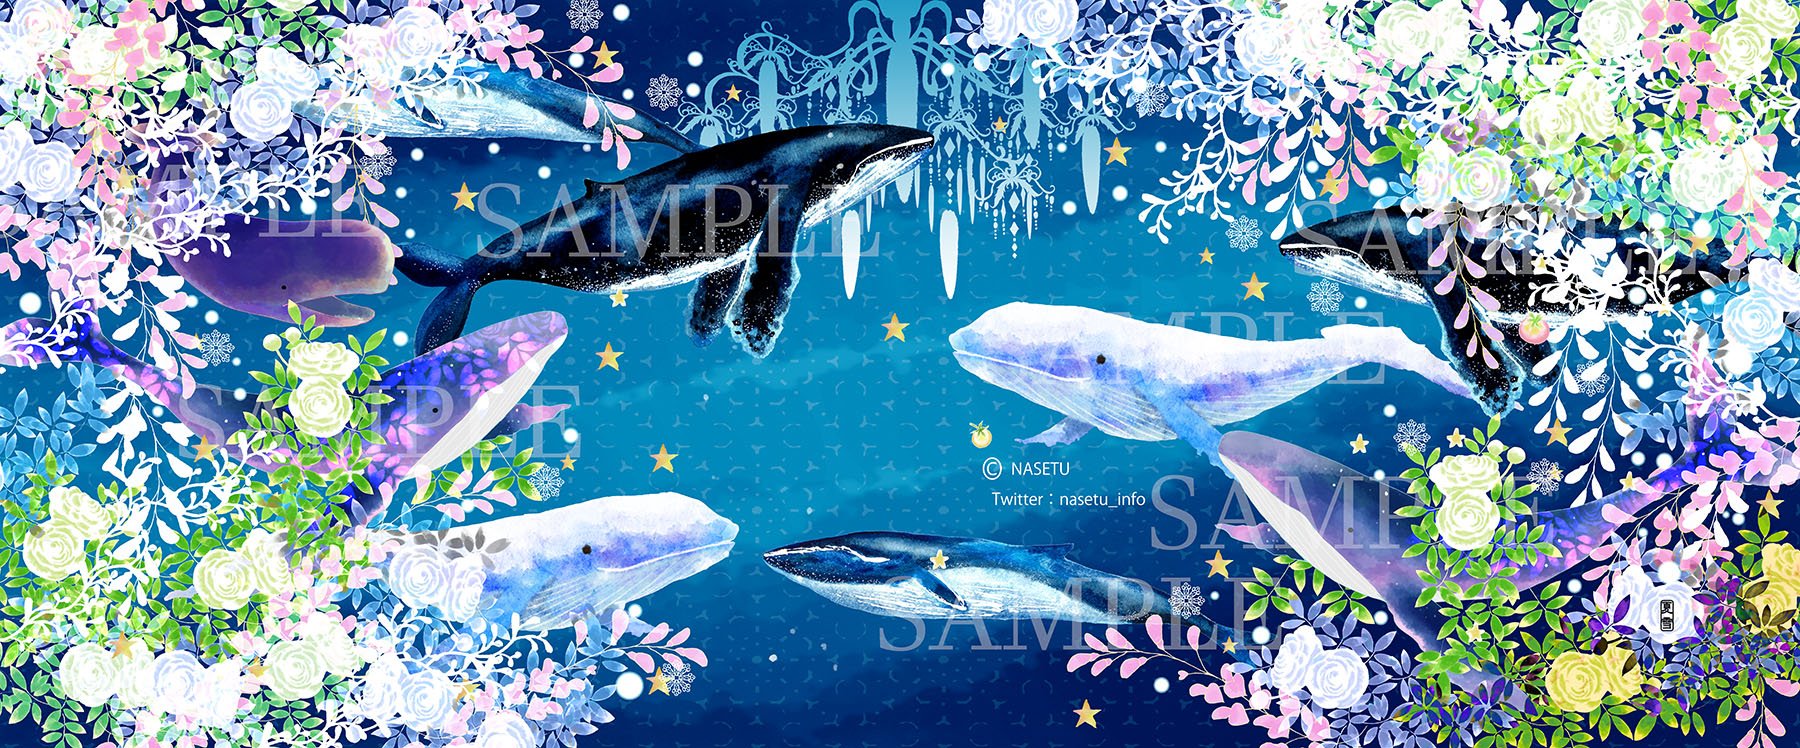 夏雪 なせつ 和と動植物イラストレーター 参加のお知らせ 5 3 4 Artevarie 東京ビッグサイト 10 15時 余命無制限 東2ホール ロ57 島角 両日固定配置 パンと猫の柄や狐のトートバッグ メモ帳など新作予定しています 個人的な好みでクジラ の